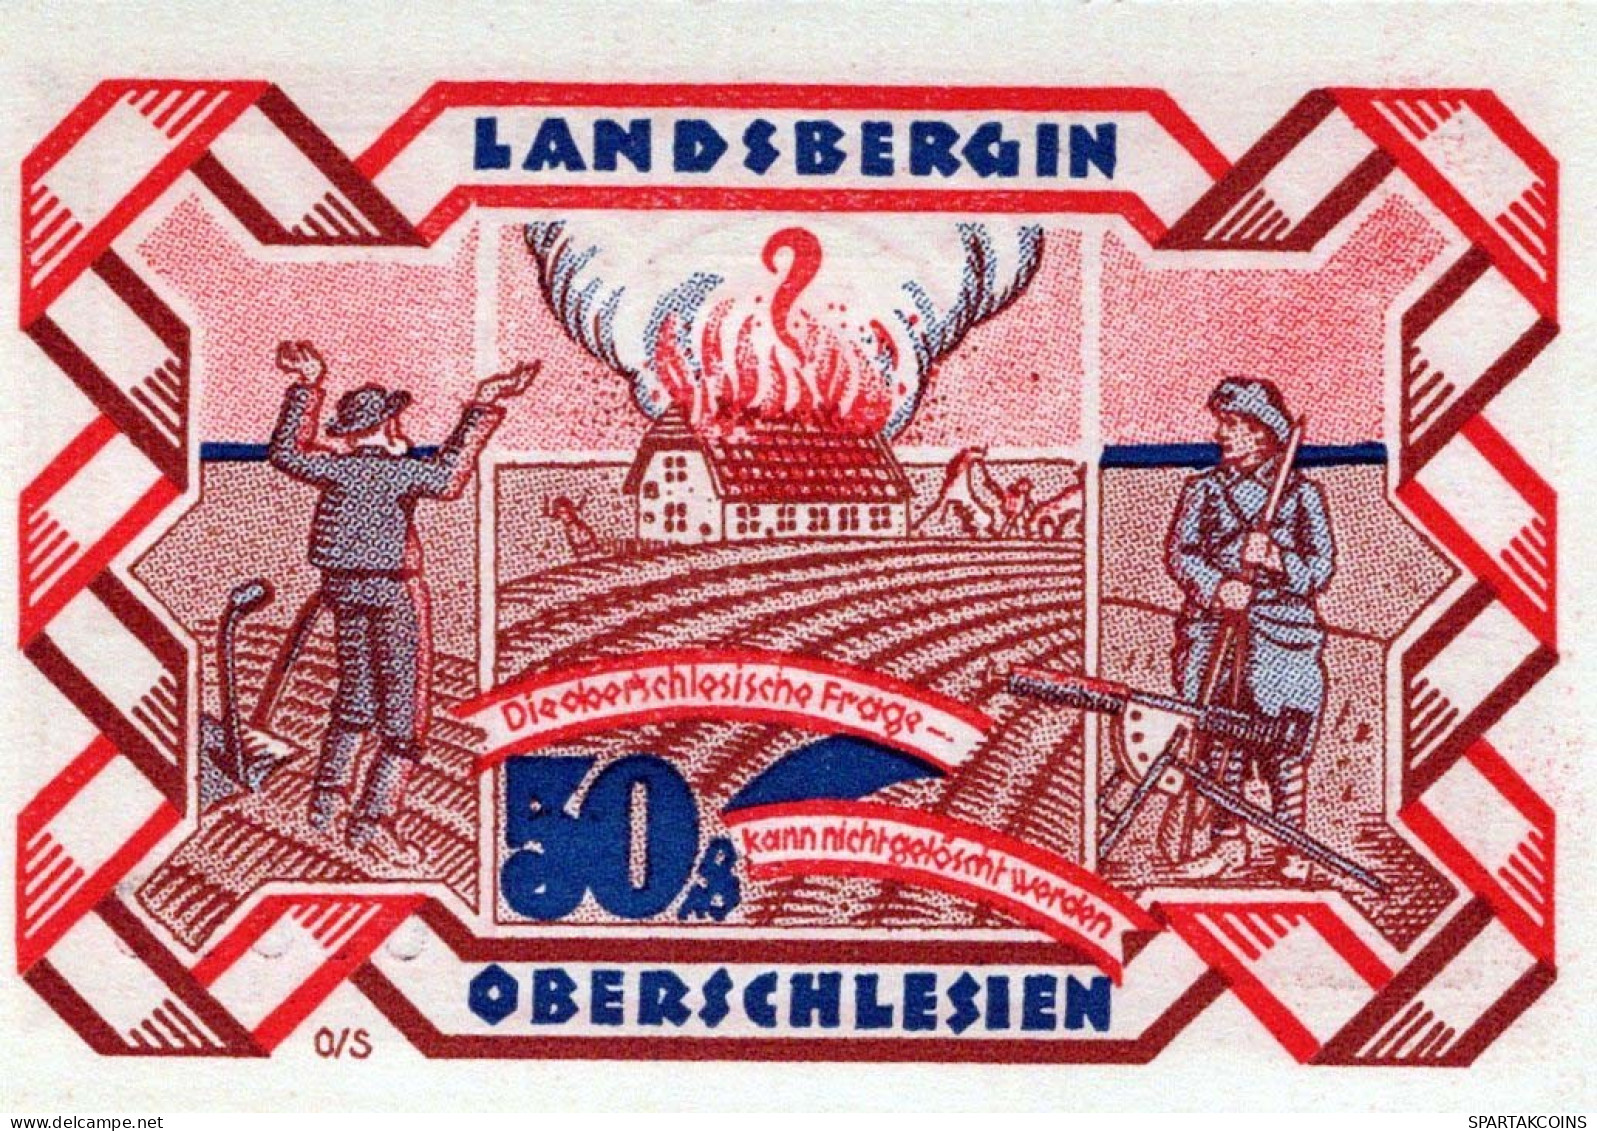 50 PFENNIG 1922 Stadt LANDSBERG OBERSCHLESIEN UNC DEUTSCHLAND #PB931 - [11] Emissions Locales